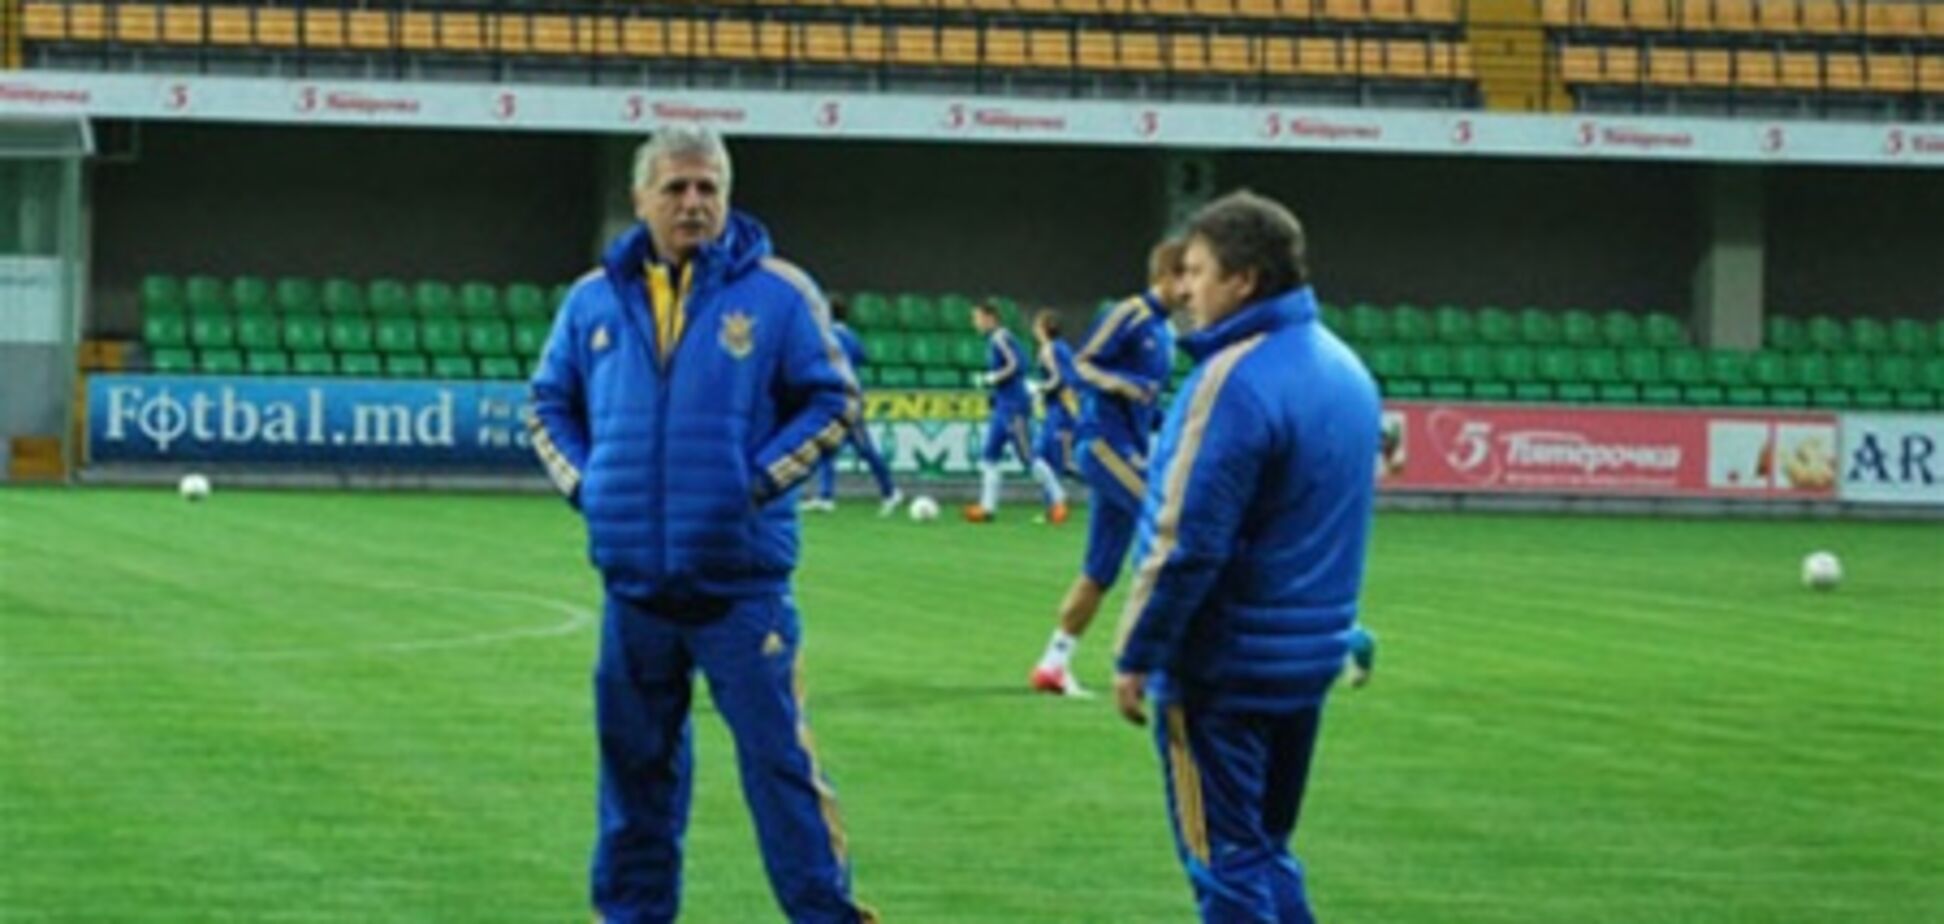 Молдова – Украина: травмы игроков, тренерские секреты и… поимка бандита